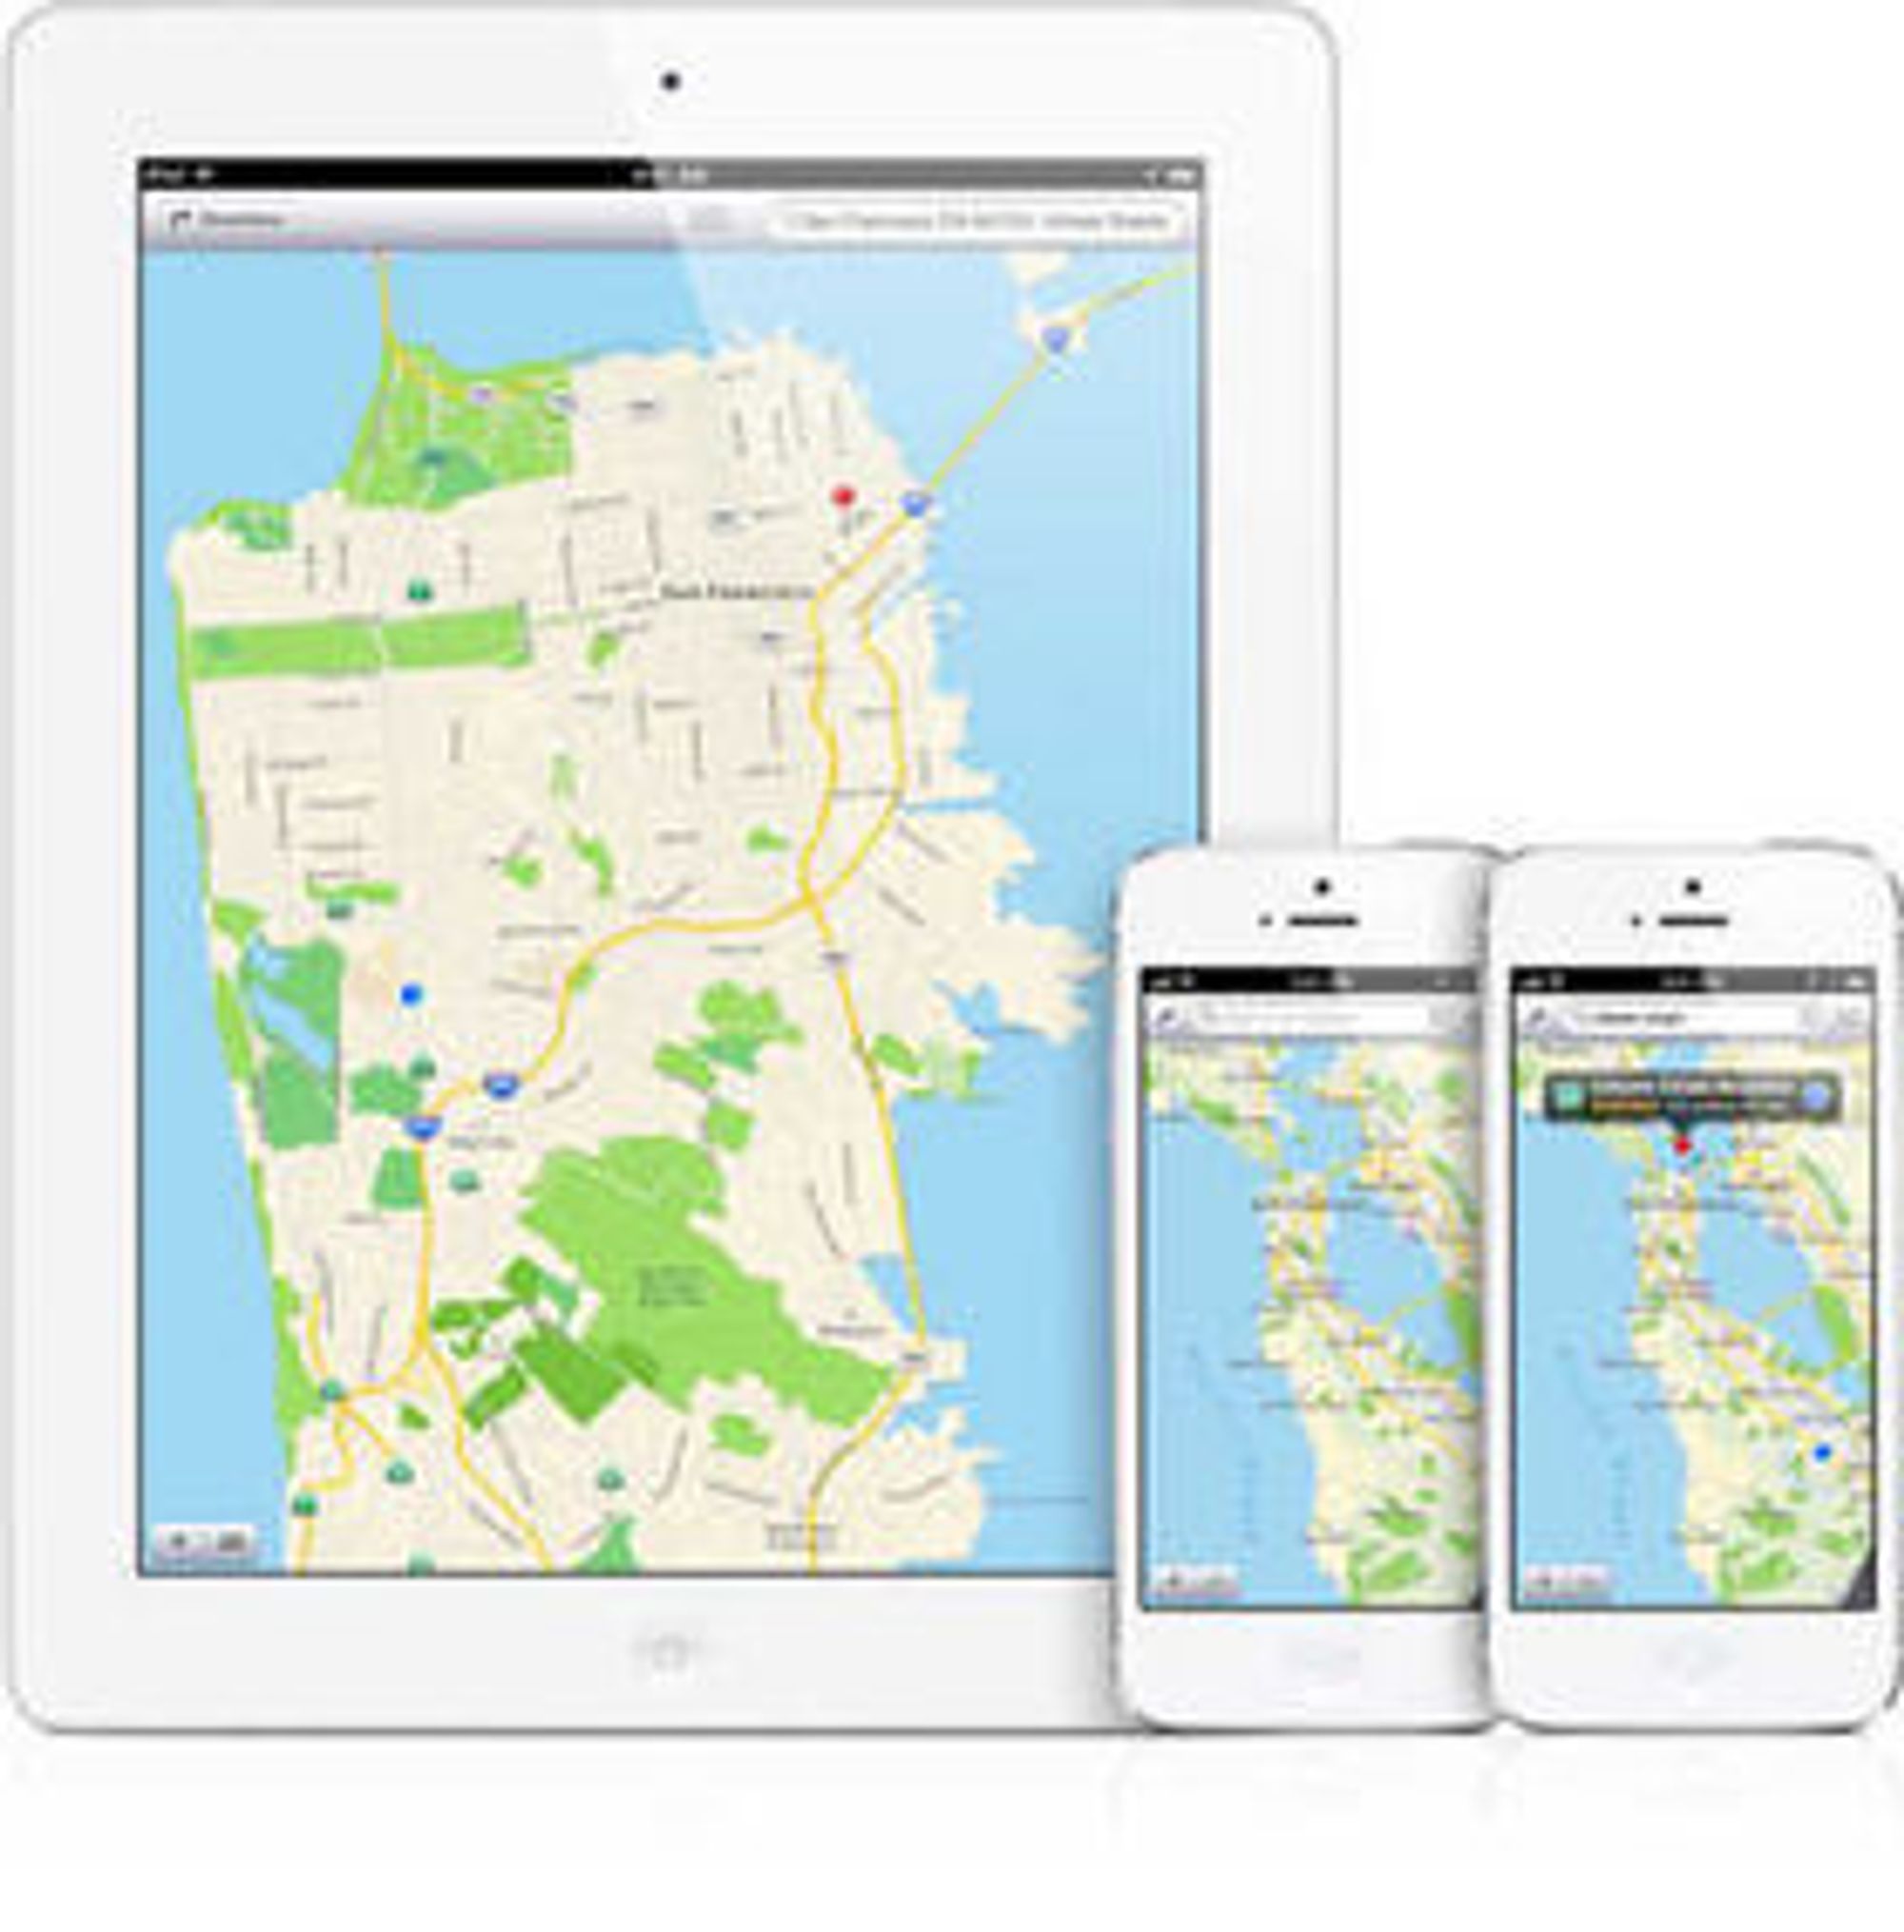 Apples egen karttjeneste har fått hard medfart blant iOS-brukerne. Nå skal den ansvarlige ha fått sparken. 